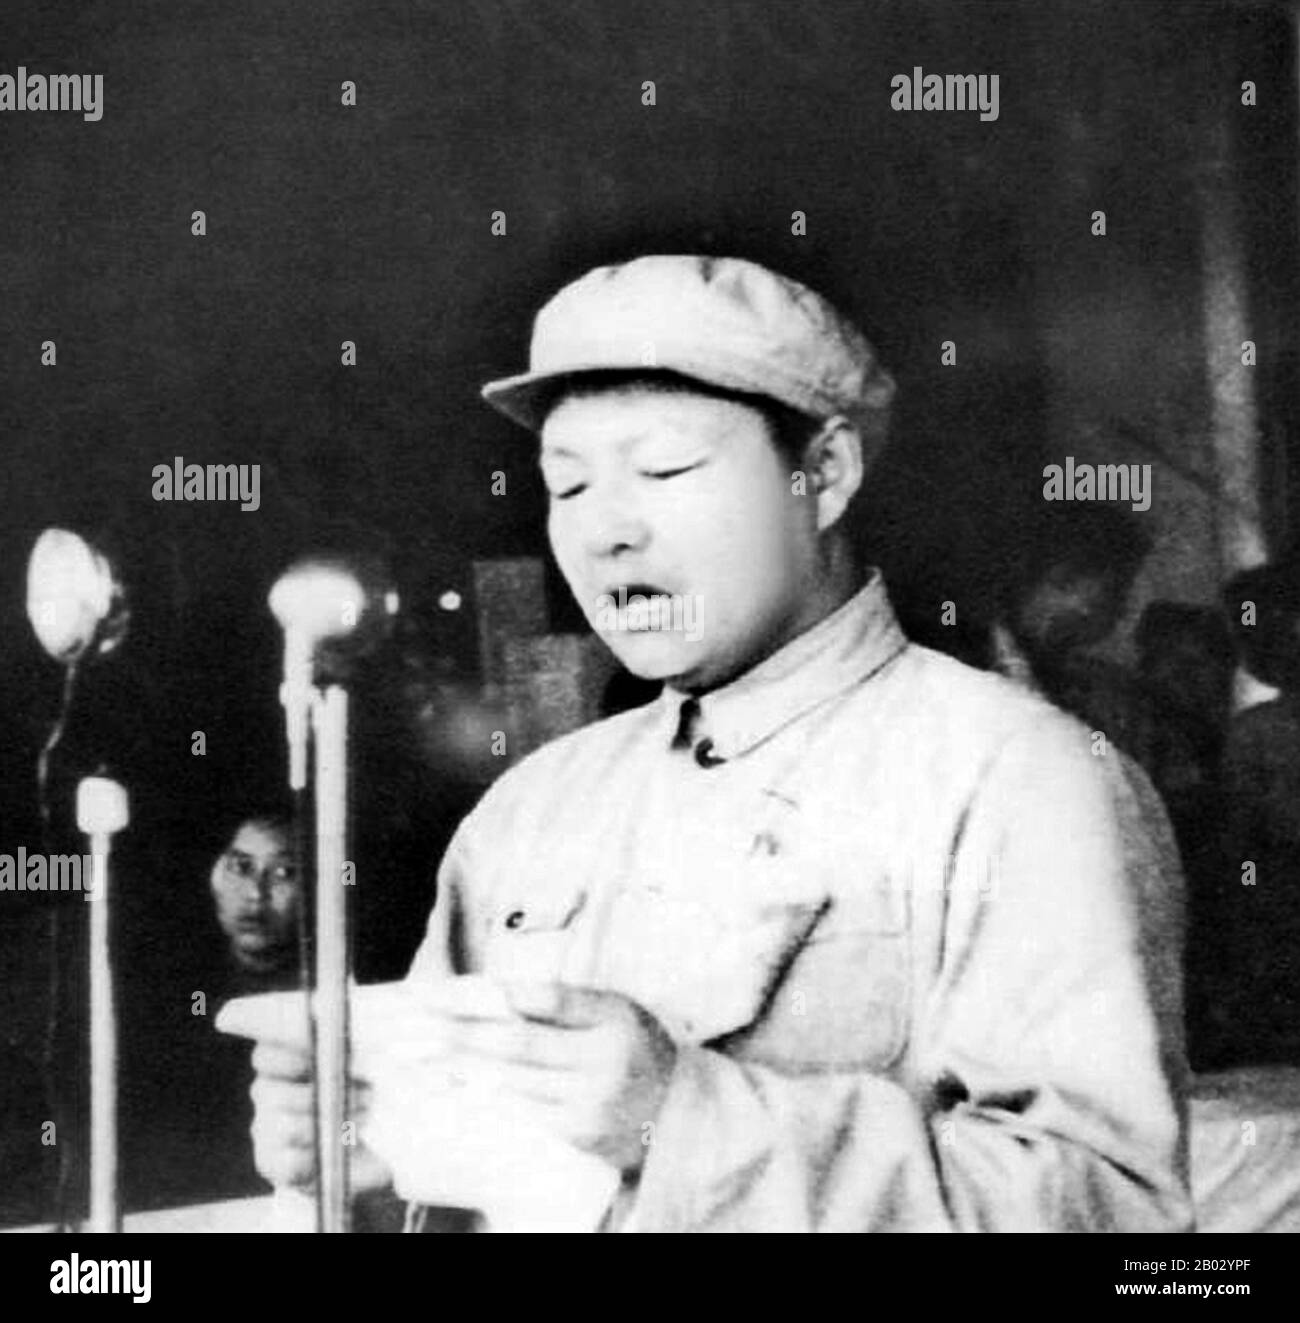 XI Zhongxun (15. Oktober 1913 - 24. Mai 2002) war ein kommunistischer Revolutionär und politischer Führer in der Volksrepublik China. Er gilt als eine der ersten Generation der chinesischen Führung. XI ist auch als Vater von Xi Jinping bekannt, dem derzeitigen Generalsekretär der Kommunistischen Partei und Präsidenten Chinas. Stockfoto